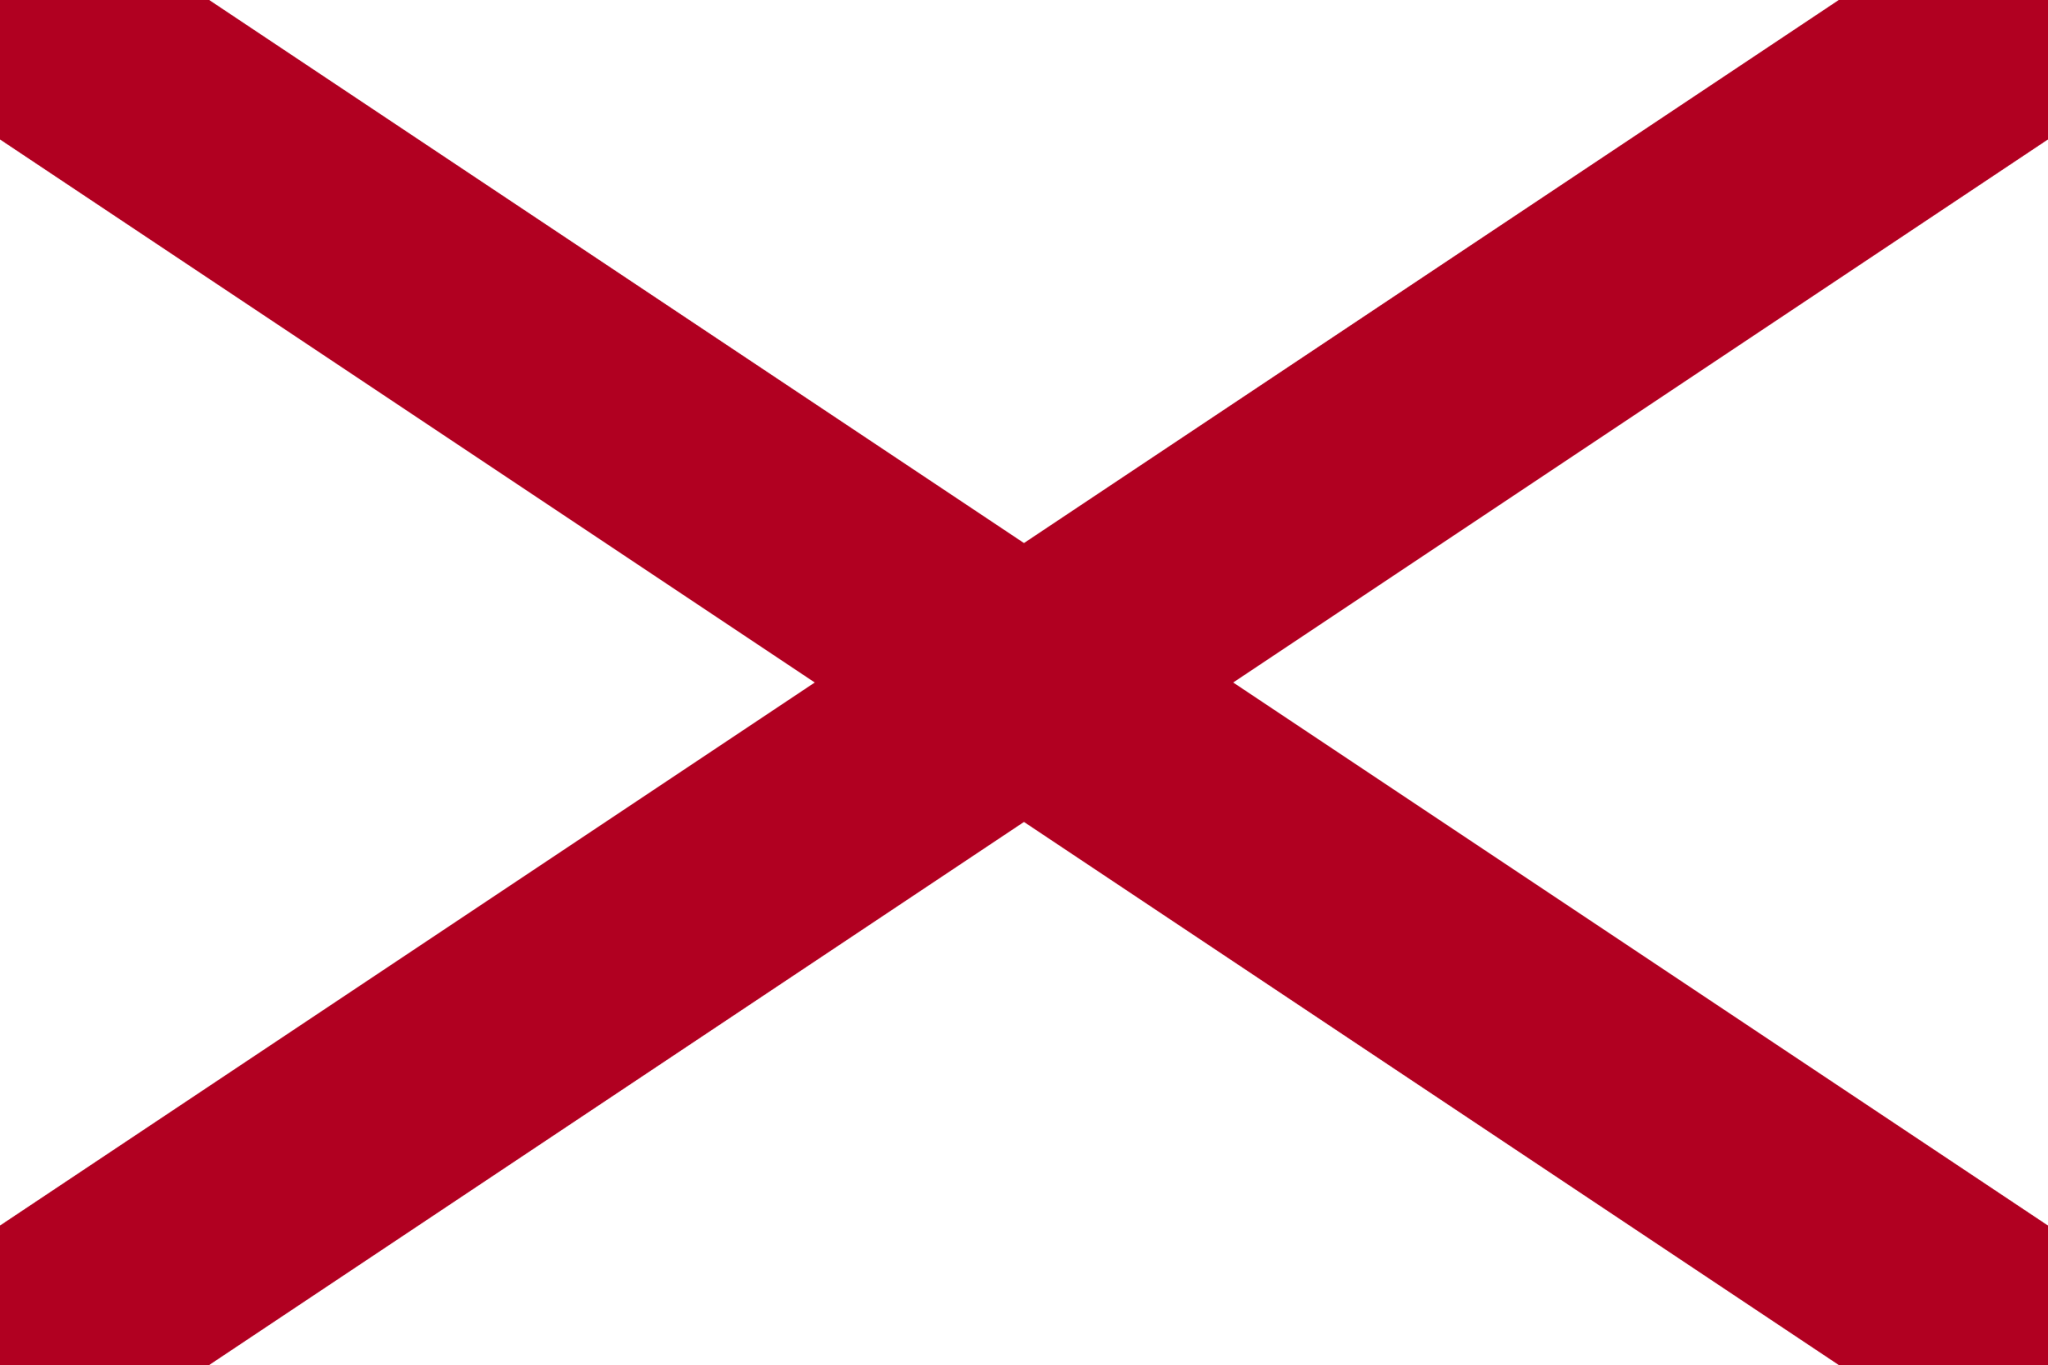 Alabama icon